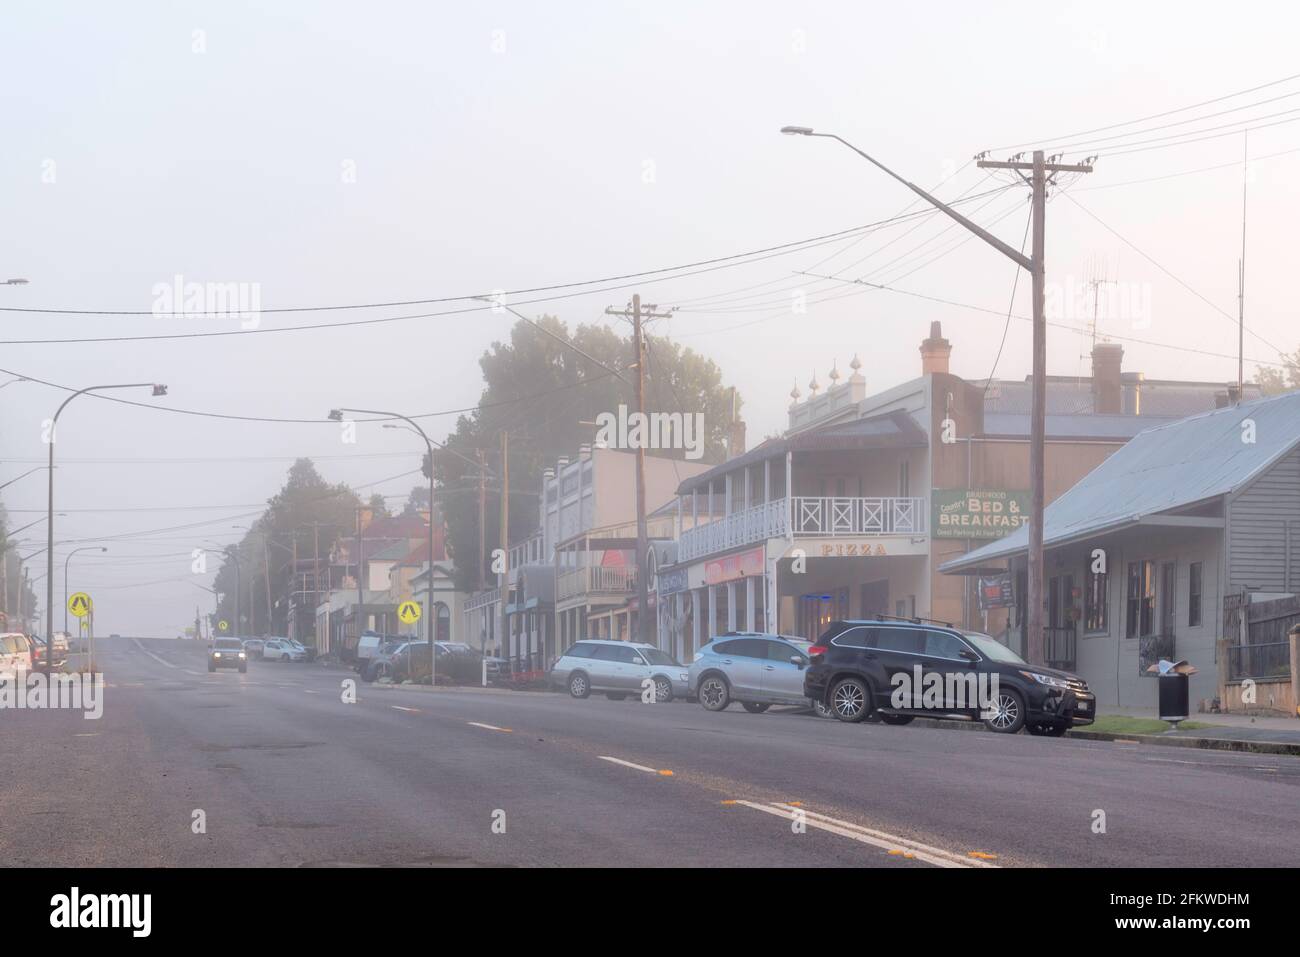 Vue vers l'ouest le long de la rue principale de dans la rue principale de Braidwood dans les plateaux sud de la Nouvelle-Galles du Sud, en Australie un matin brumeux Banque D'Images